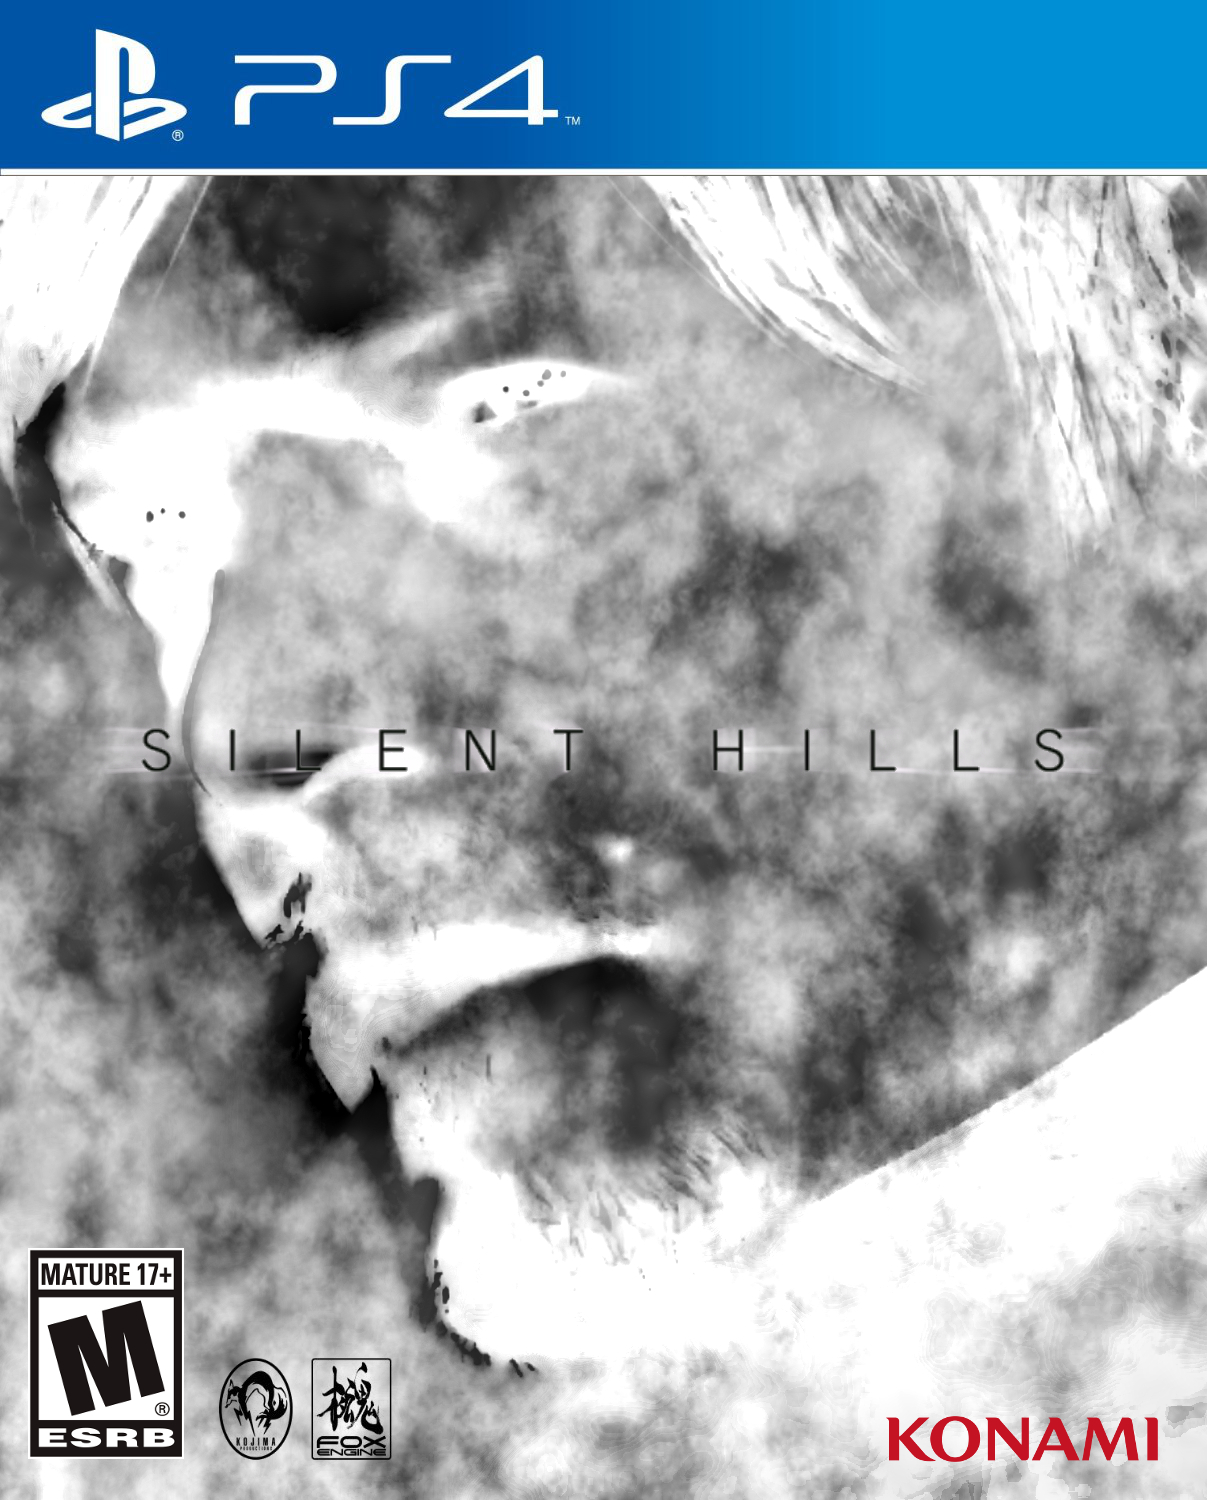 Silent Hills PS4 Box Art 20140903-2054 - V1-11-3 by CrazyDave55811 on  DeviantArt